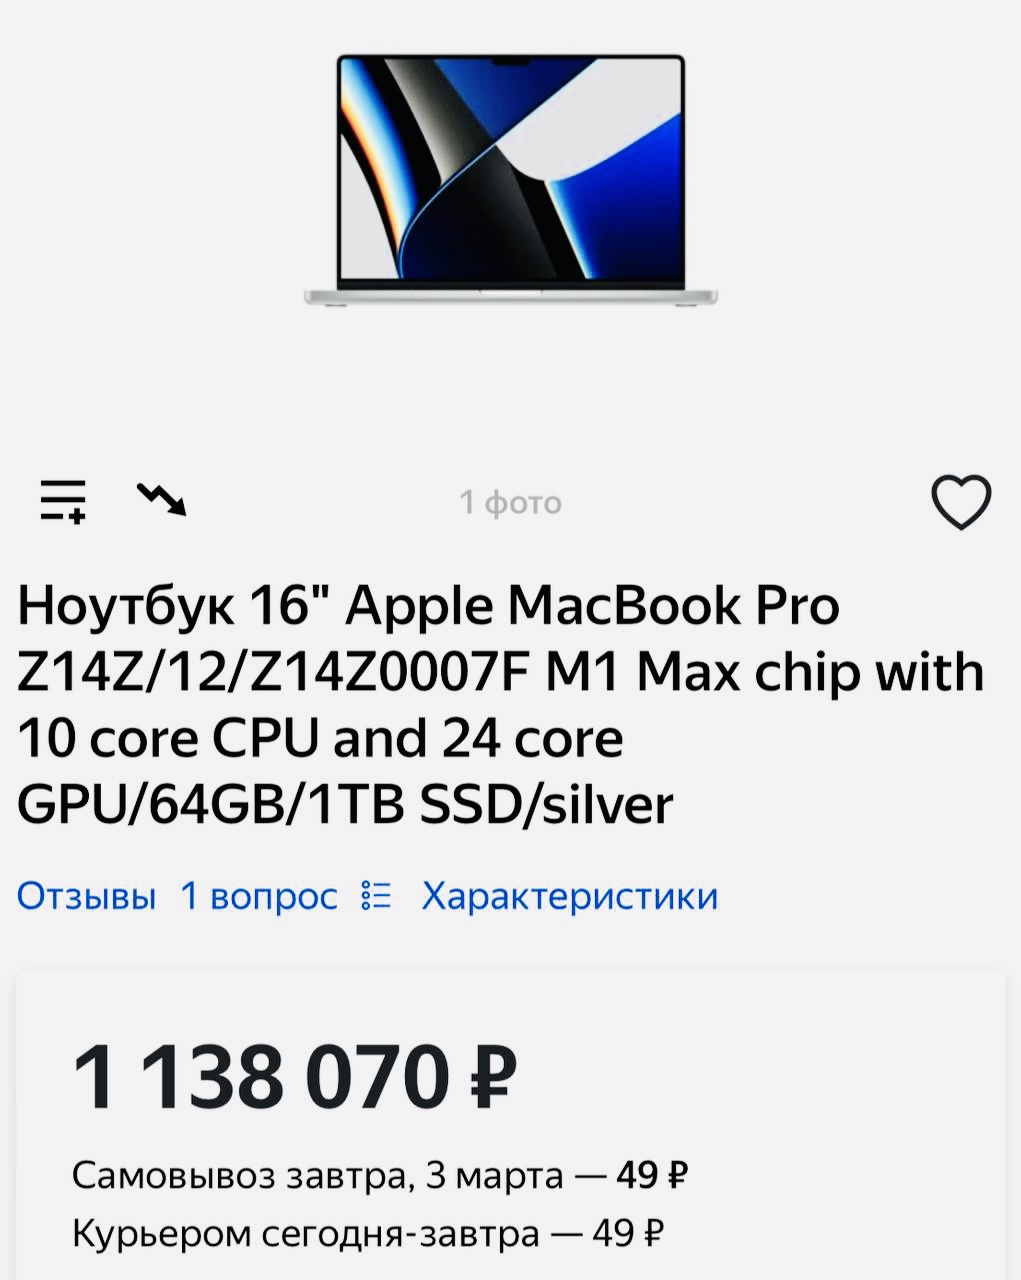 Российские магазины резко увеличили цены на всю технику Apple в России